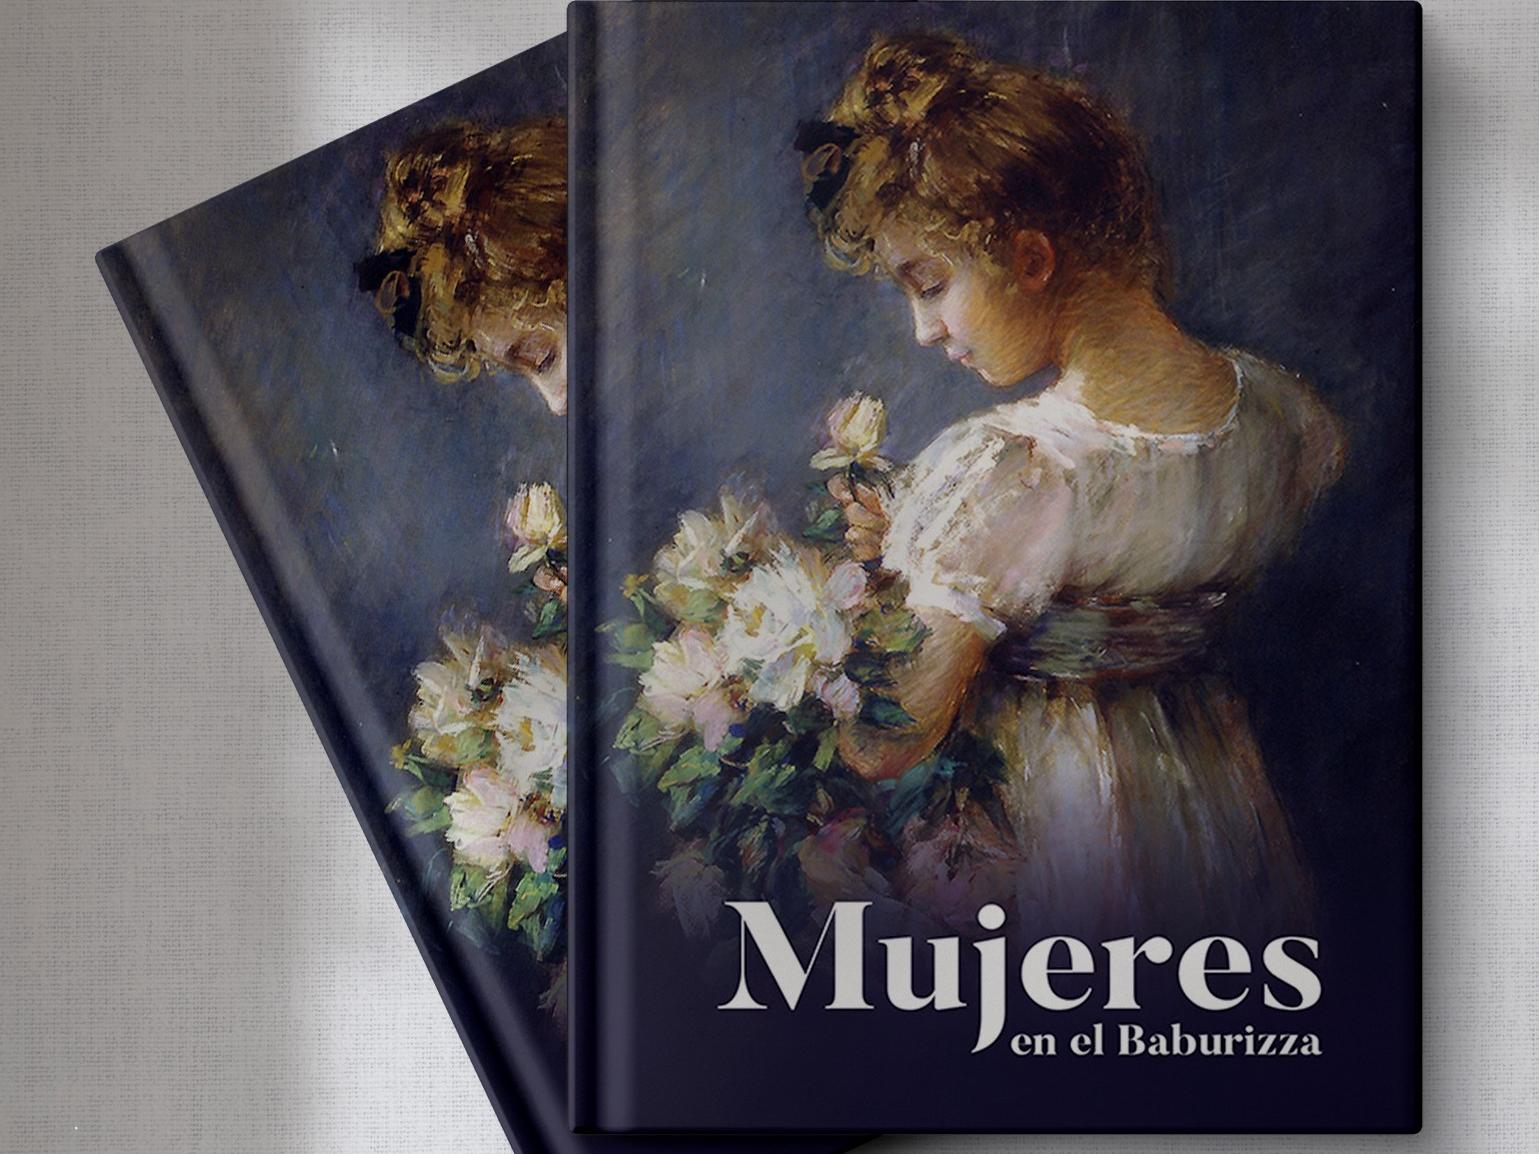 Imagen de libro con pintura que representa a una niña vestida de blanco en la portada